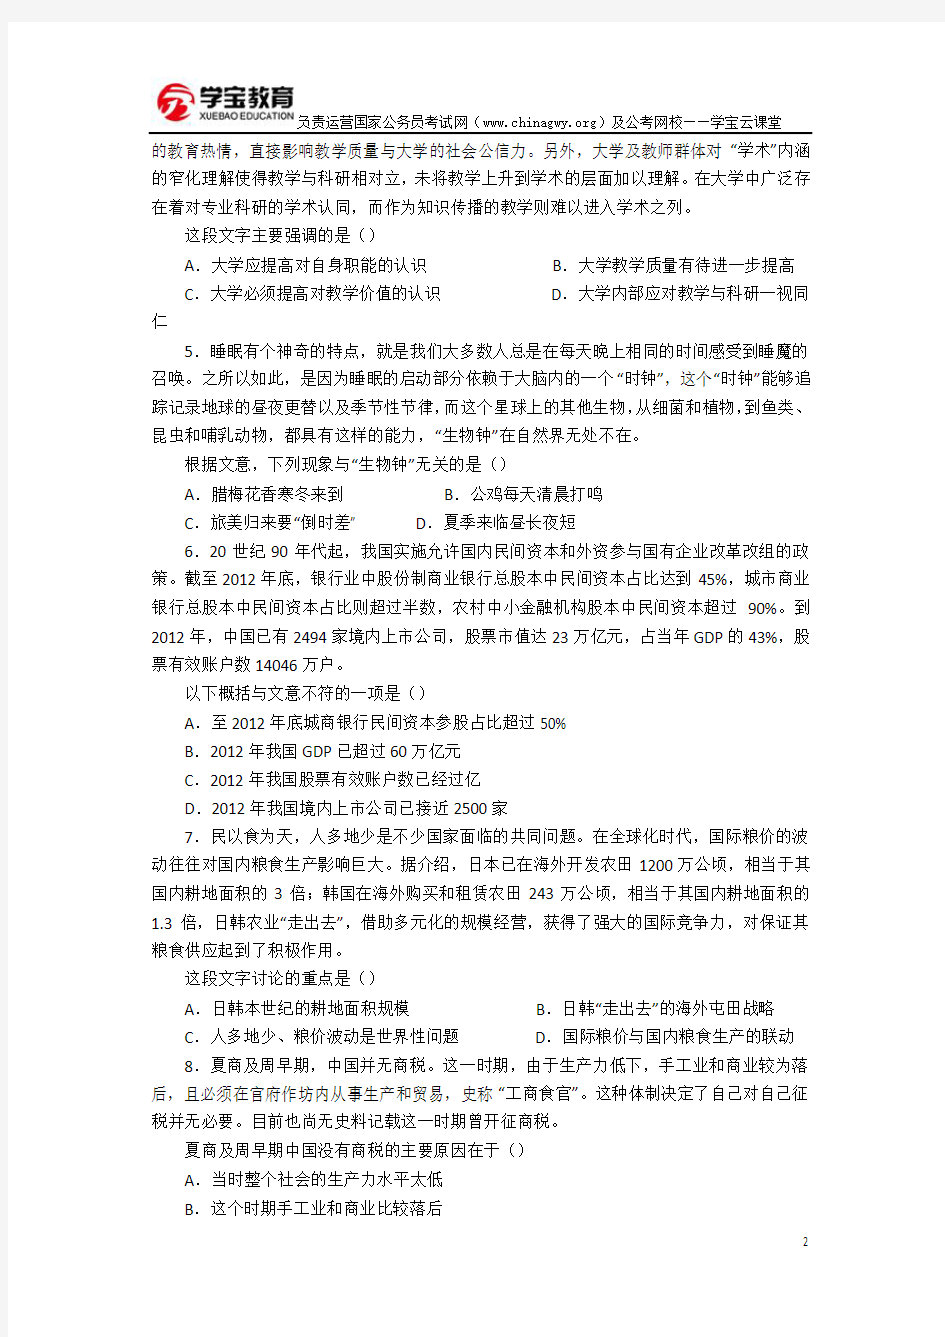 2015年江苏公务员考试行测真题及答案(A类)(标准打印版)